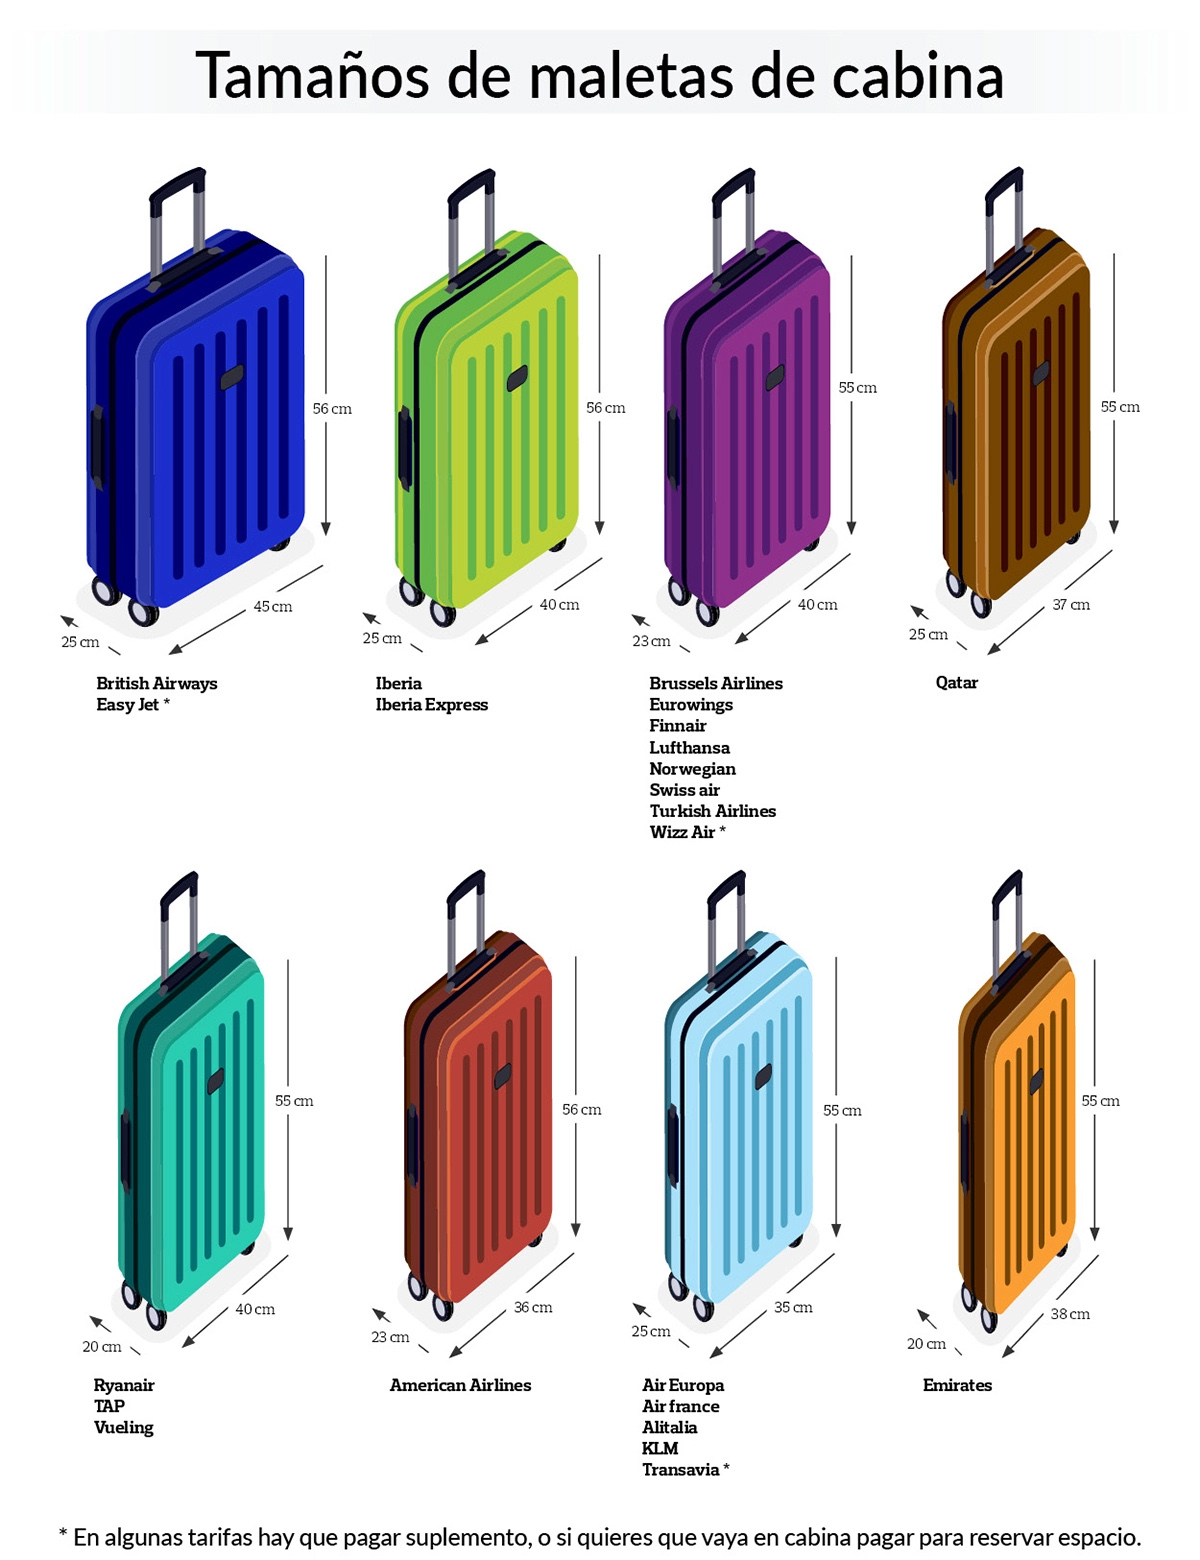 El equipaje de mano permitido por cada compañía detalle | Noticias Aerolíneas | Revista de turismo Preferente.com